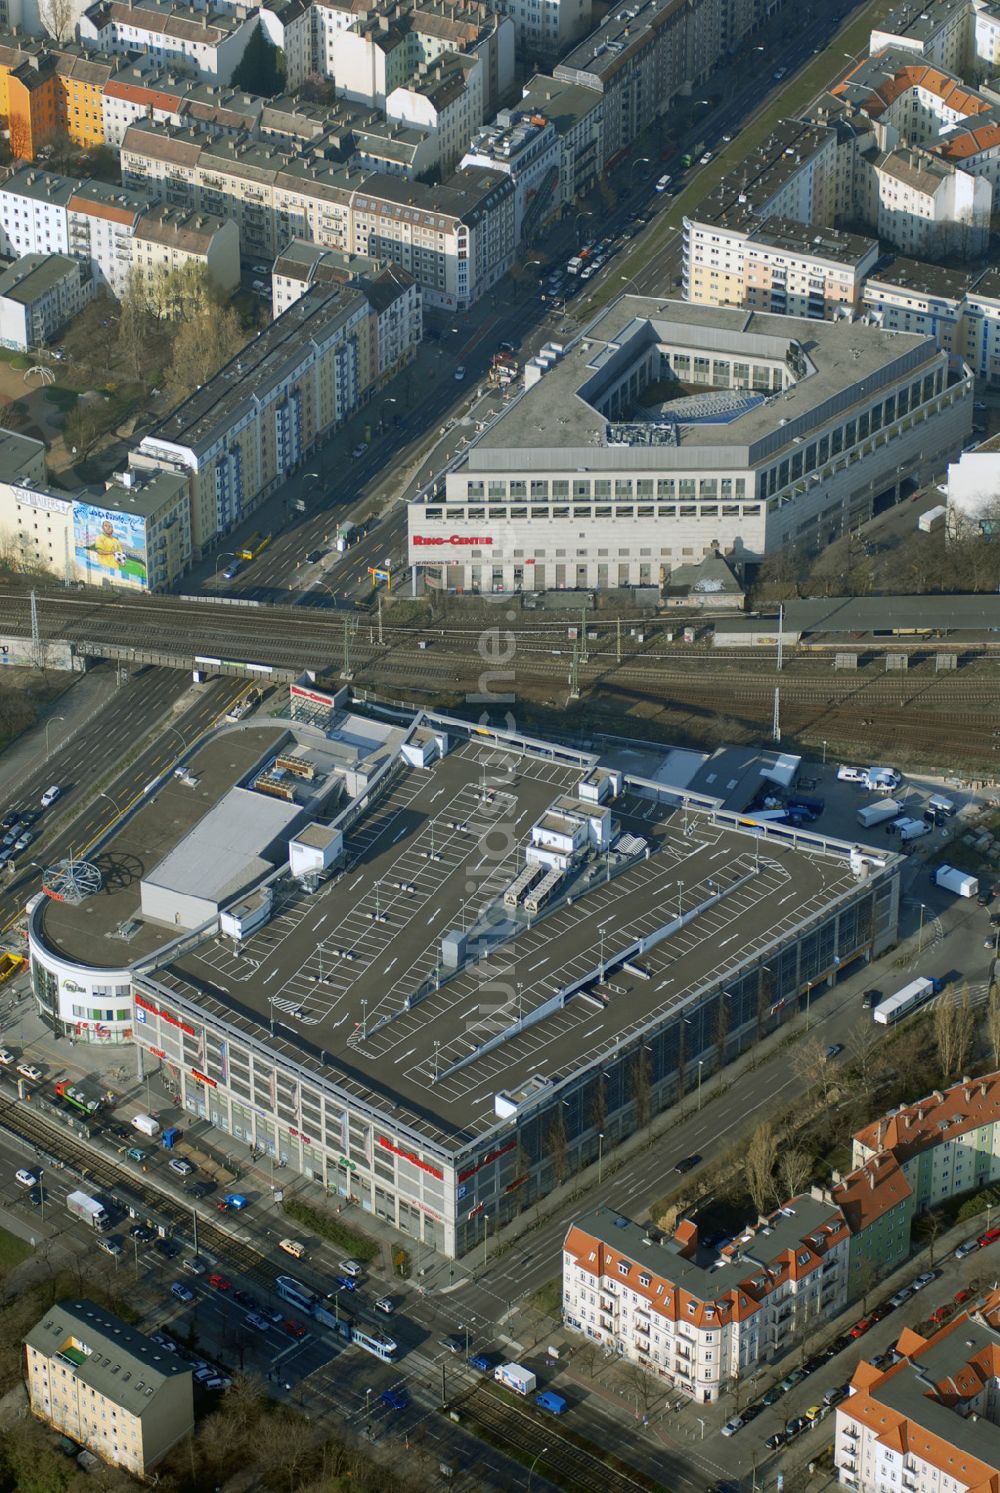 Luftaufnahme Berlin - Das fertige Ringcenter 3 der ECE GmbH an der Frankfurter Allee in Berlin-Friedrichshain am Eröffnungstag